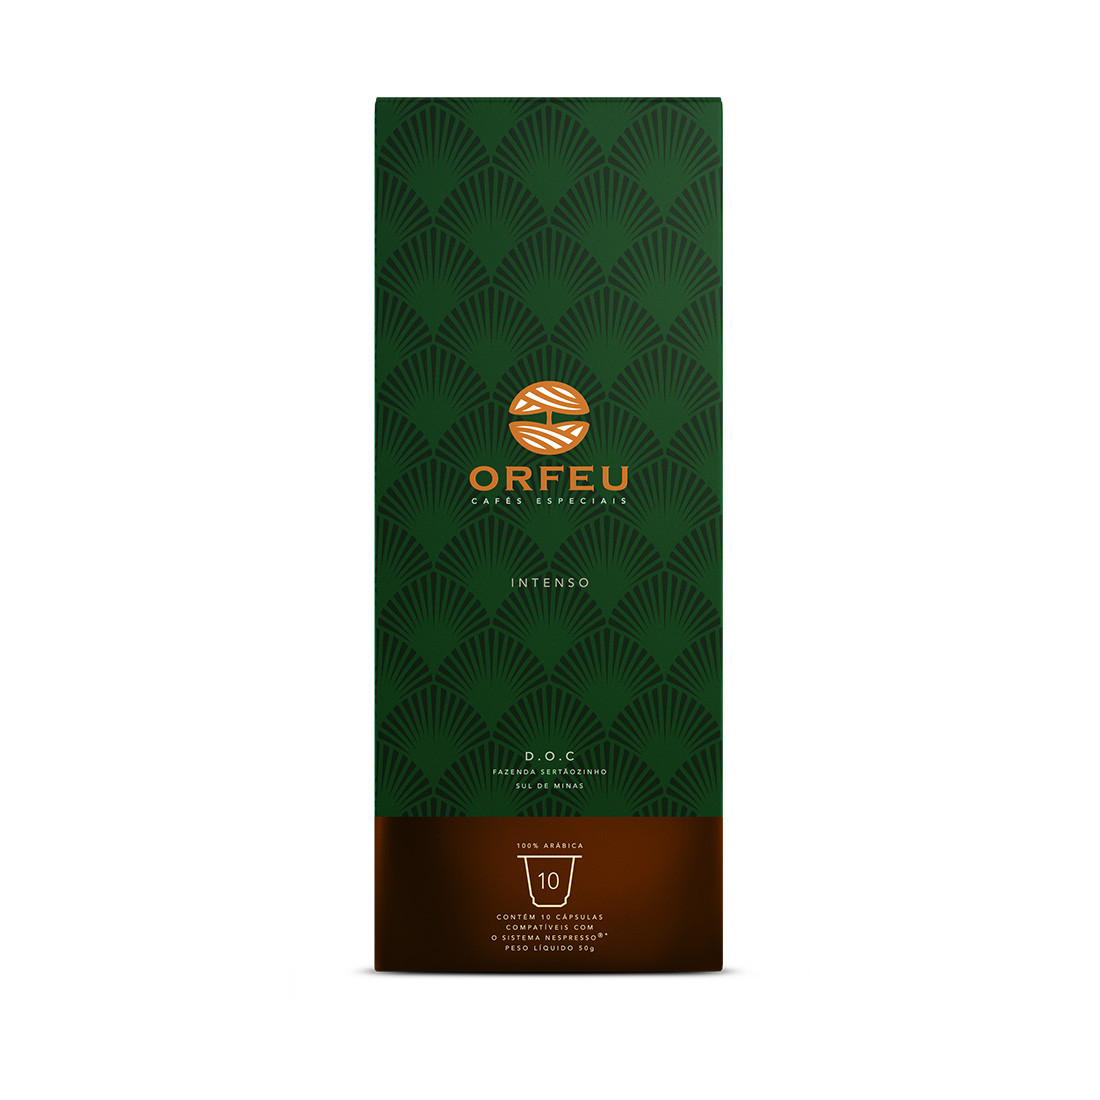 Cápsulas de Café Compatíveis com Nespresso Orfeu Blend Intenso - 10 cápsulas